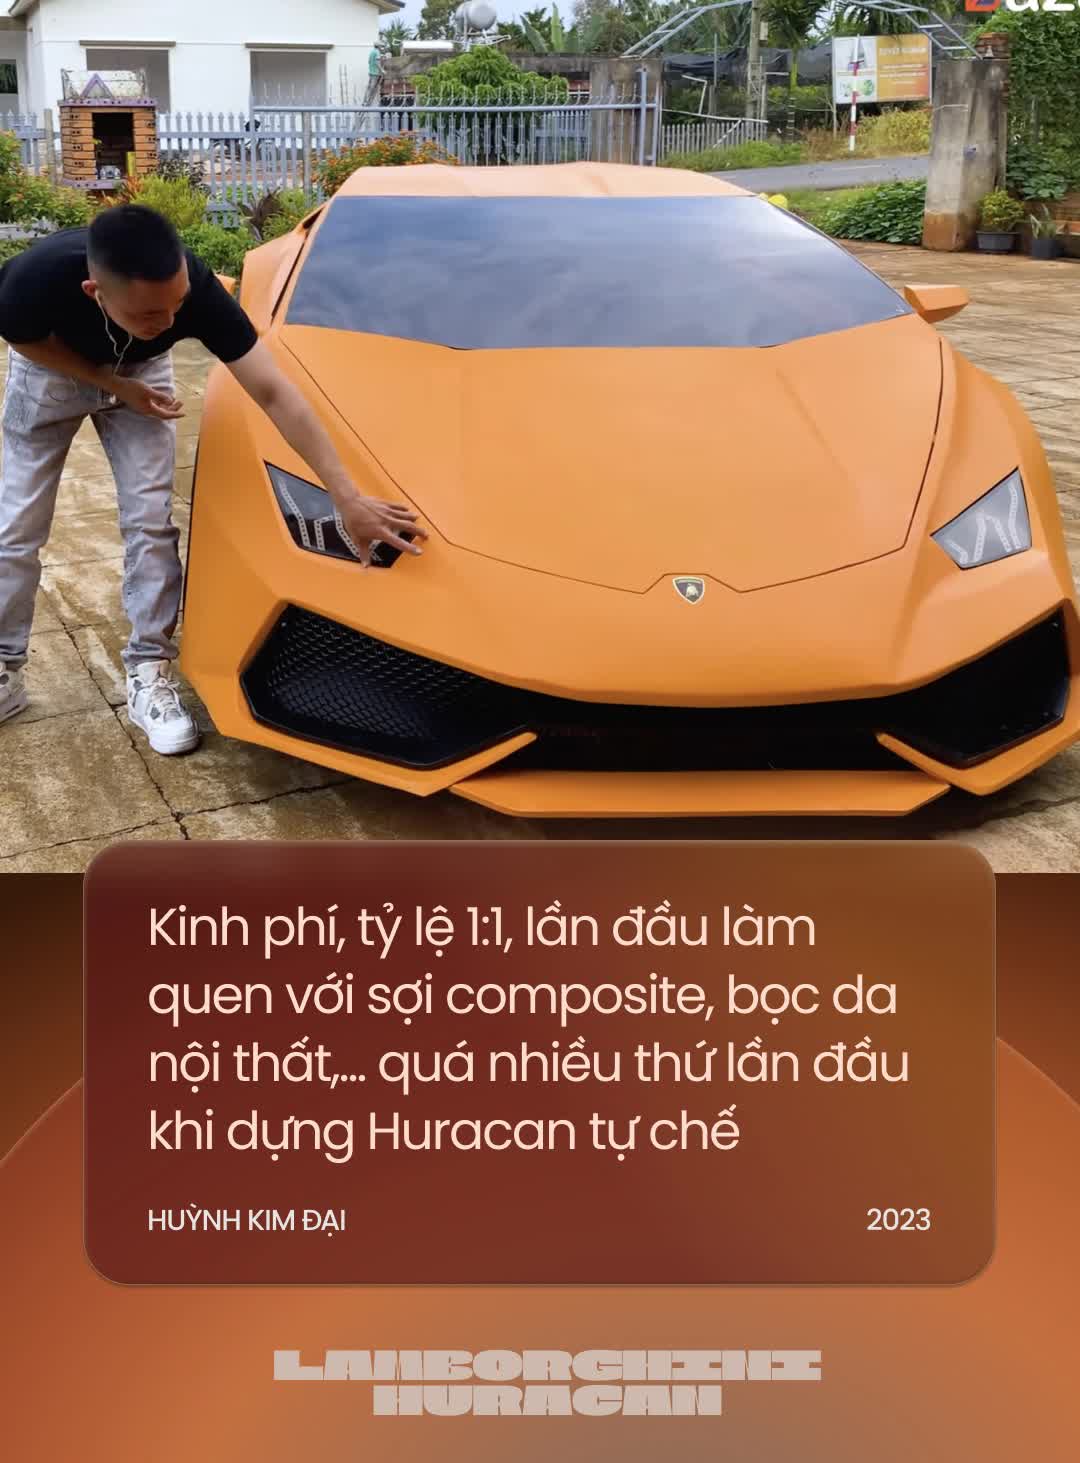 Đôi bạn Tây Nguyên tự chế Lamborghini Huracan khiến cộng đồng quốc tế trầm trồ: ‘Năm tới sẽ chuyển mình để độc lạ nhất Việt Nam’ - Ảnh 4.